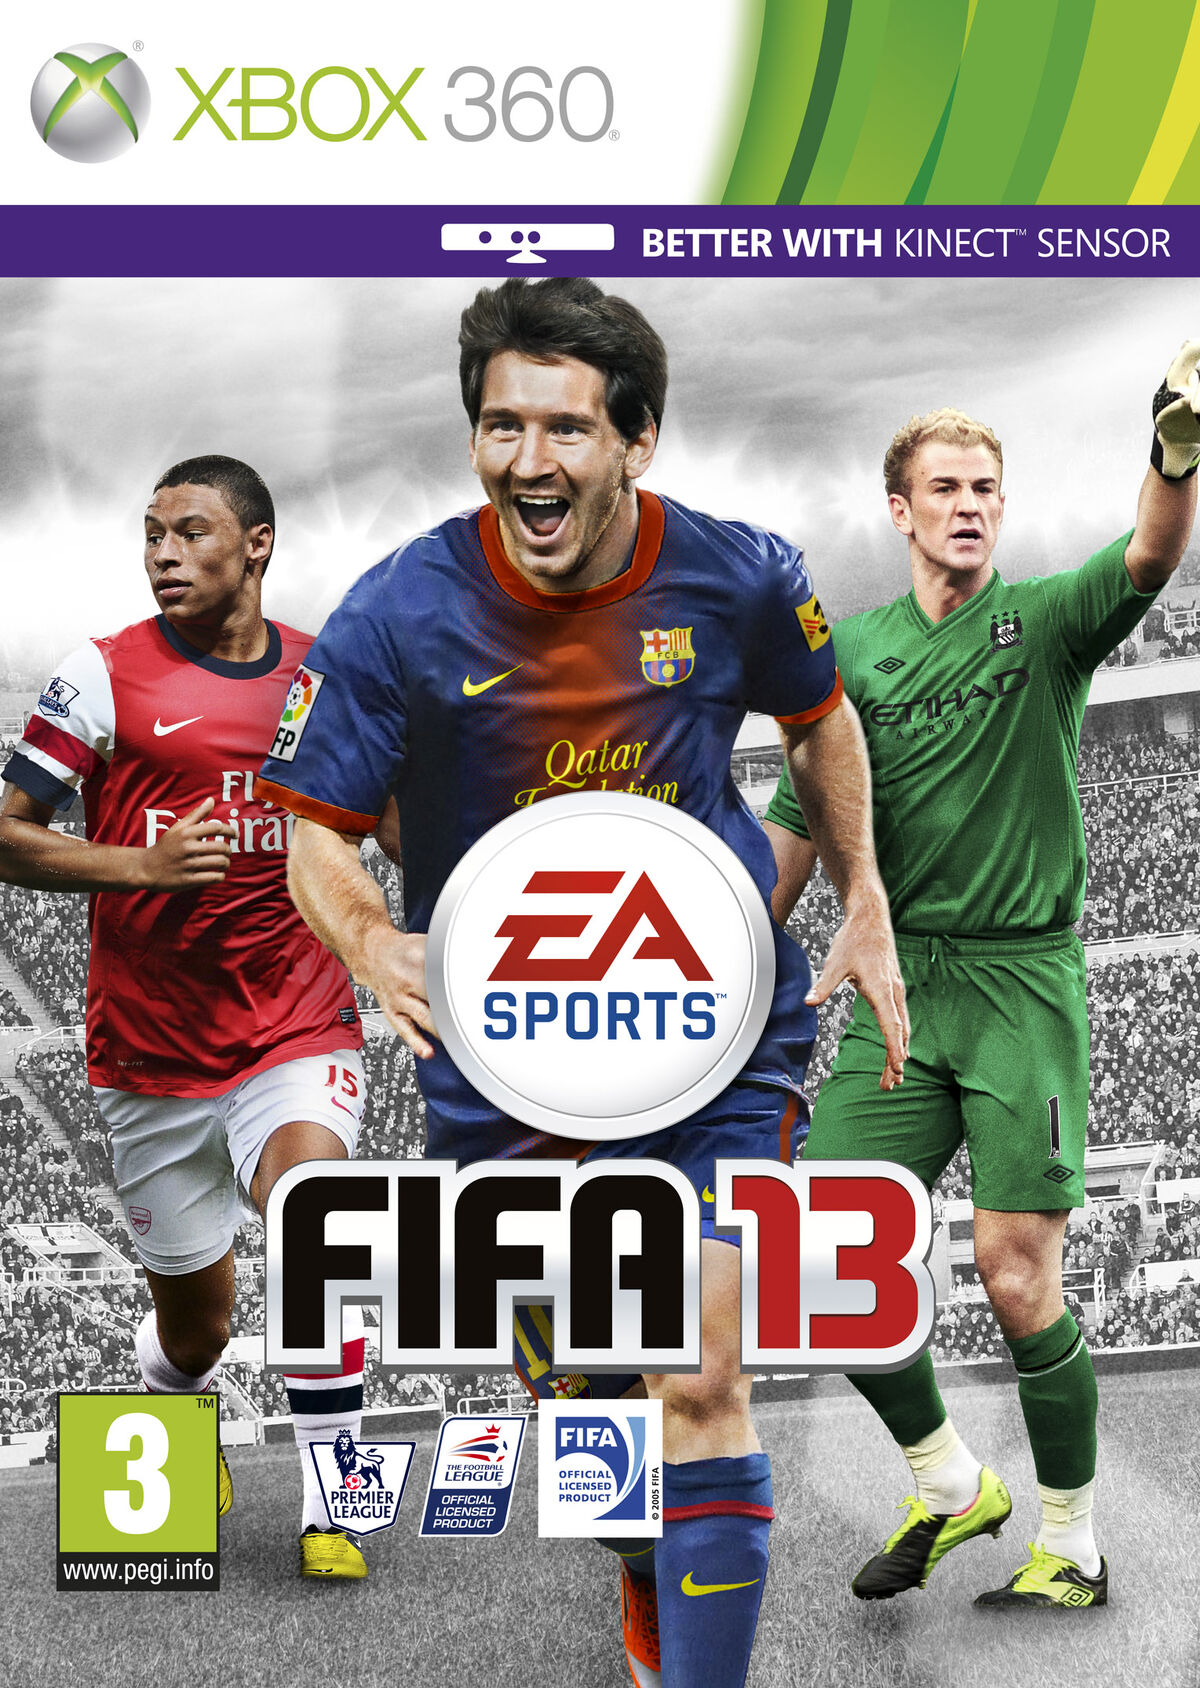 FIFA 15, FIFA Football Gaming wiki